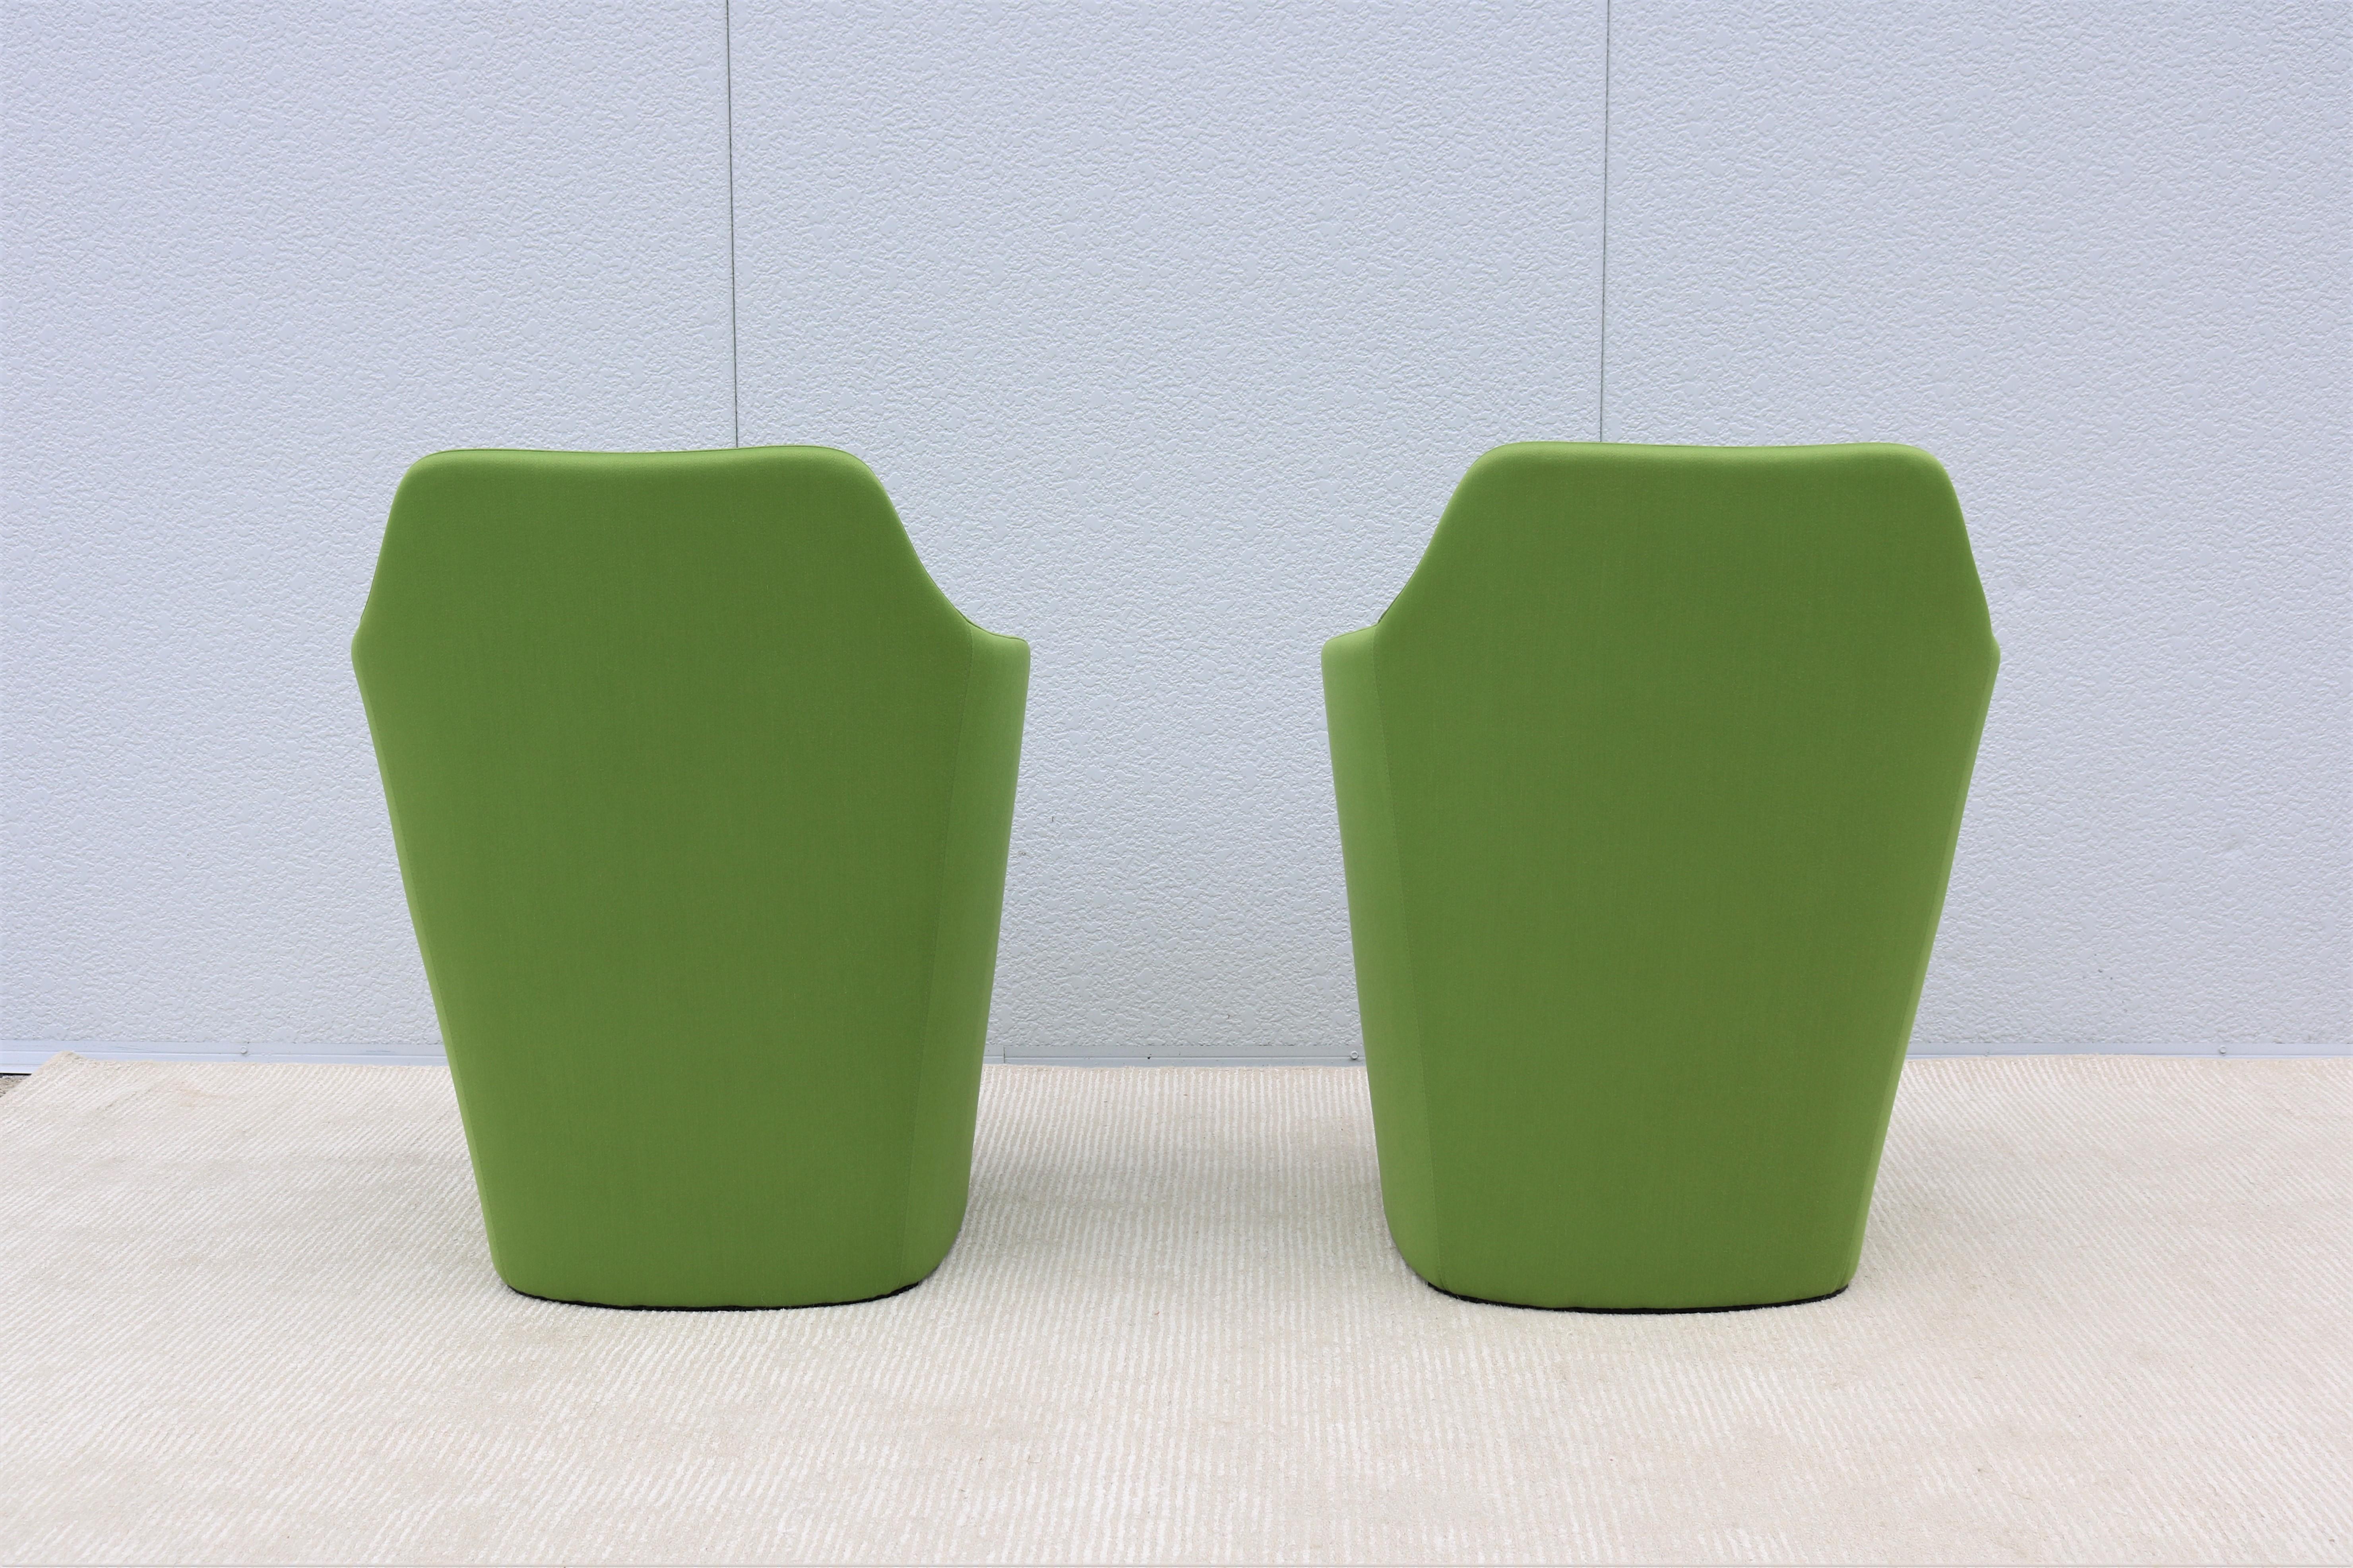 Art Deco Contemporary Modern Simon Pengelly for Allermuir Venus Green Tub Chairs, a Pair For Sale